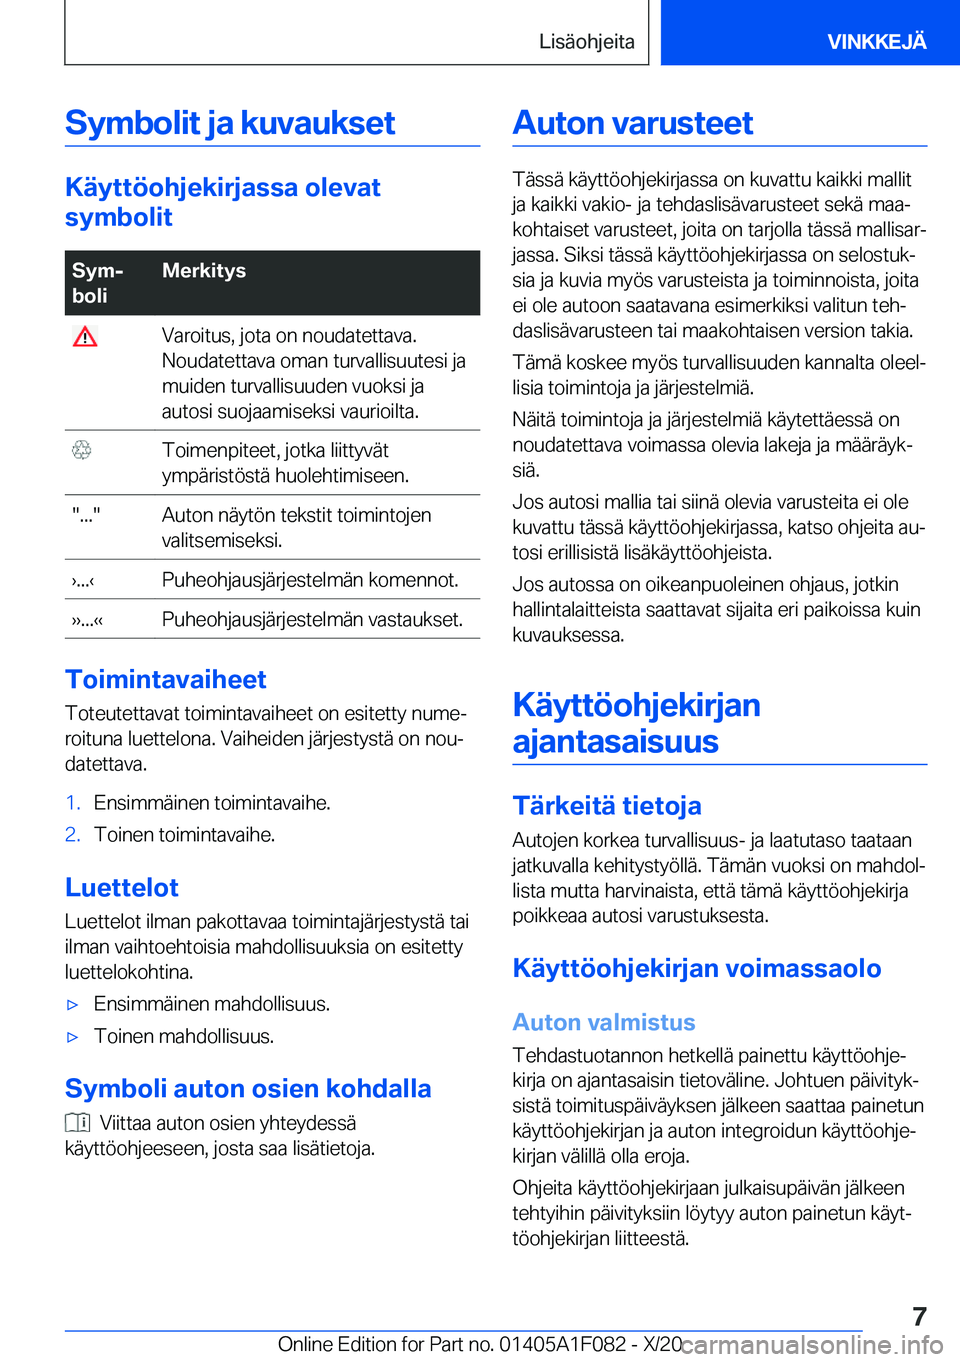 BMW X7 2021  Omistajan Käsikirja (in Finnish) �S�y�m�b�o�l�i�t��j�a��k�u�v�a�u�k�s�e�t
�K�